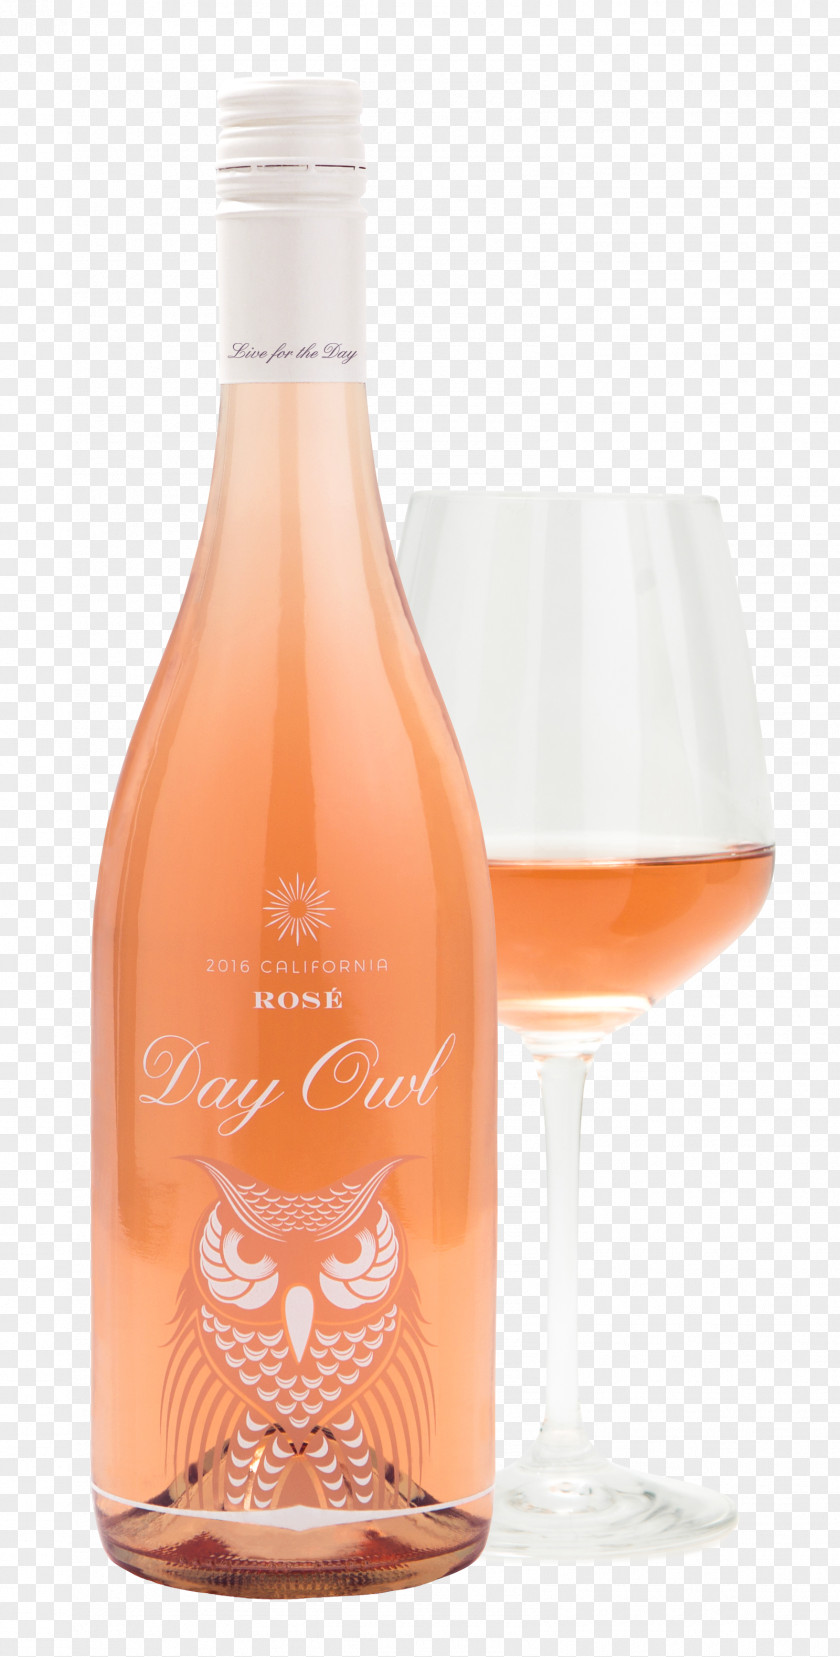 Rose Rosé Wine Glass Bottle Distilled Beverage PNG